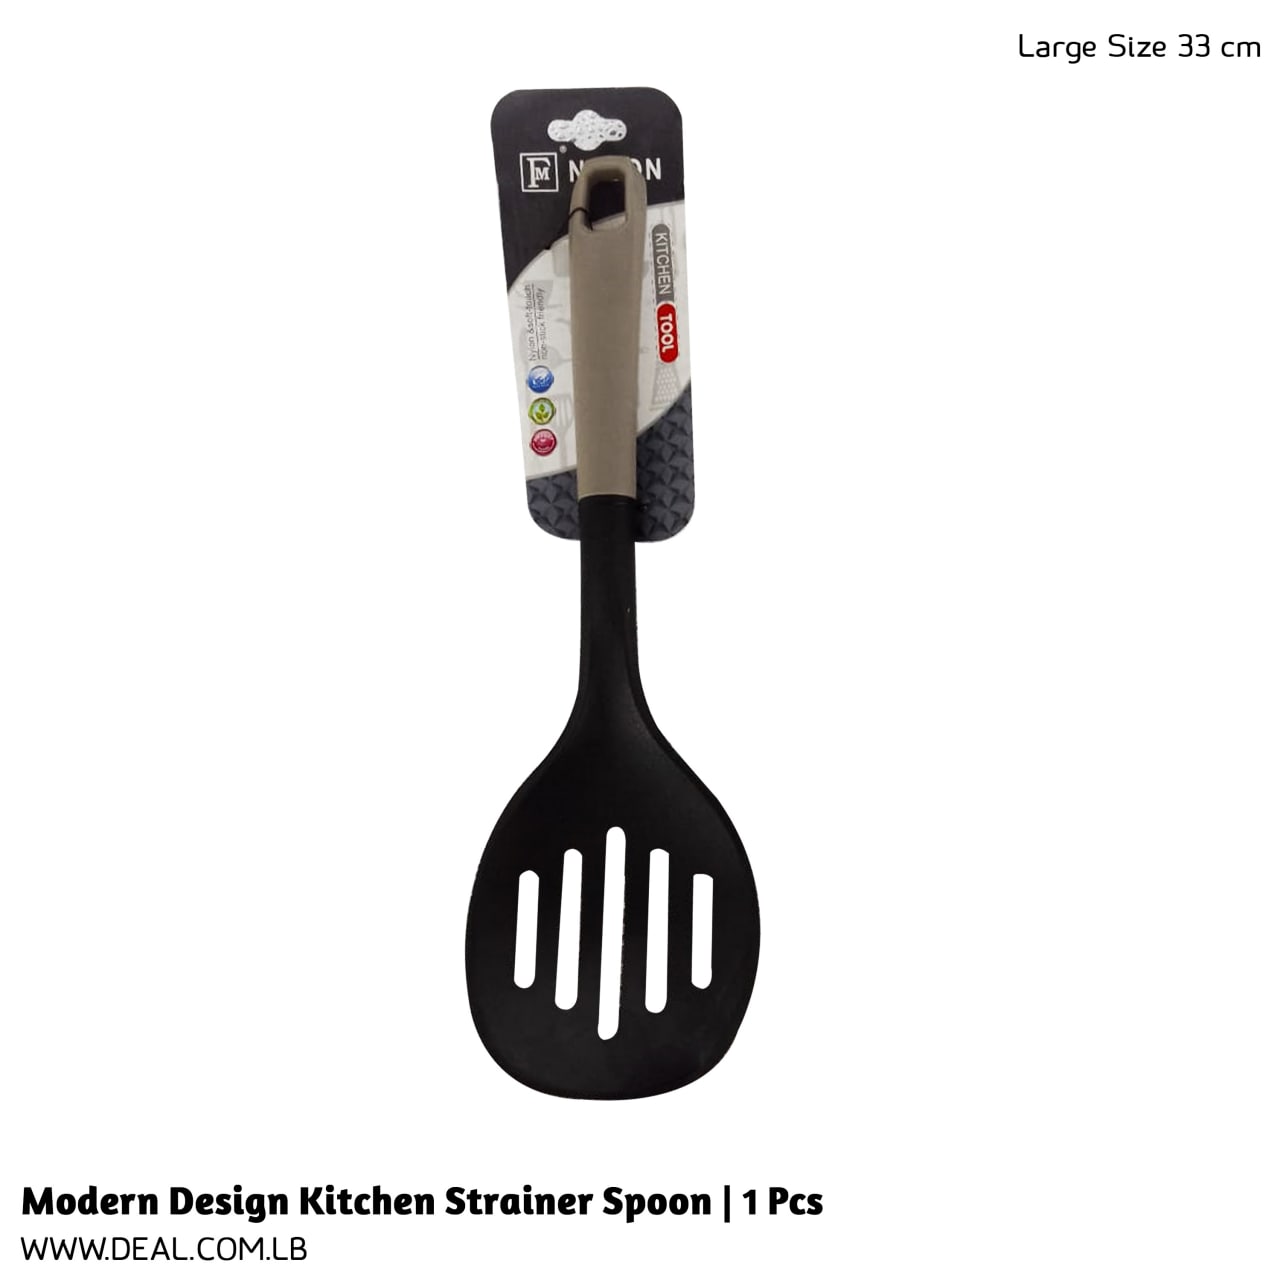 Modern+Design+Kitchen+Strainer+Spoon+%7C+1+Pcs